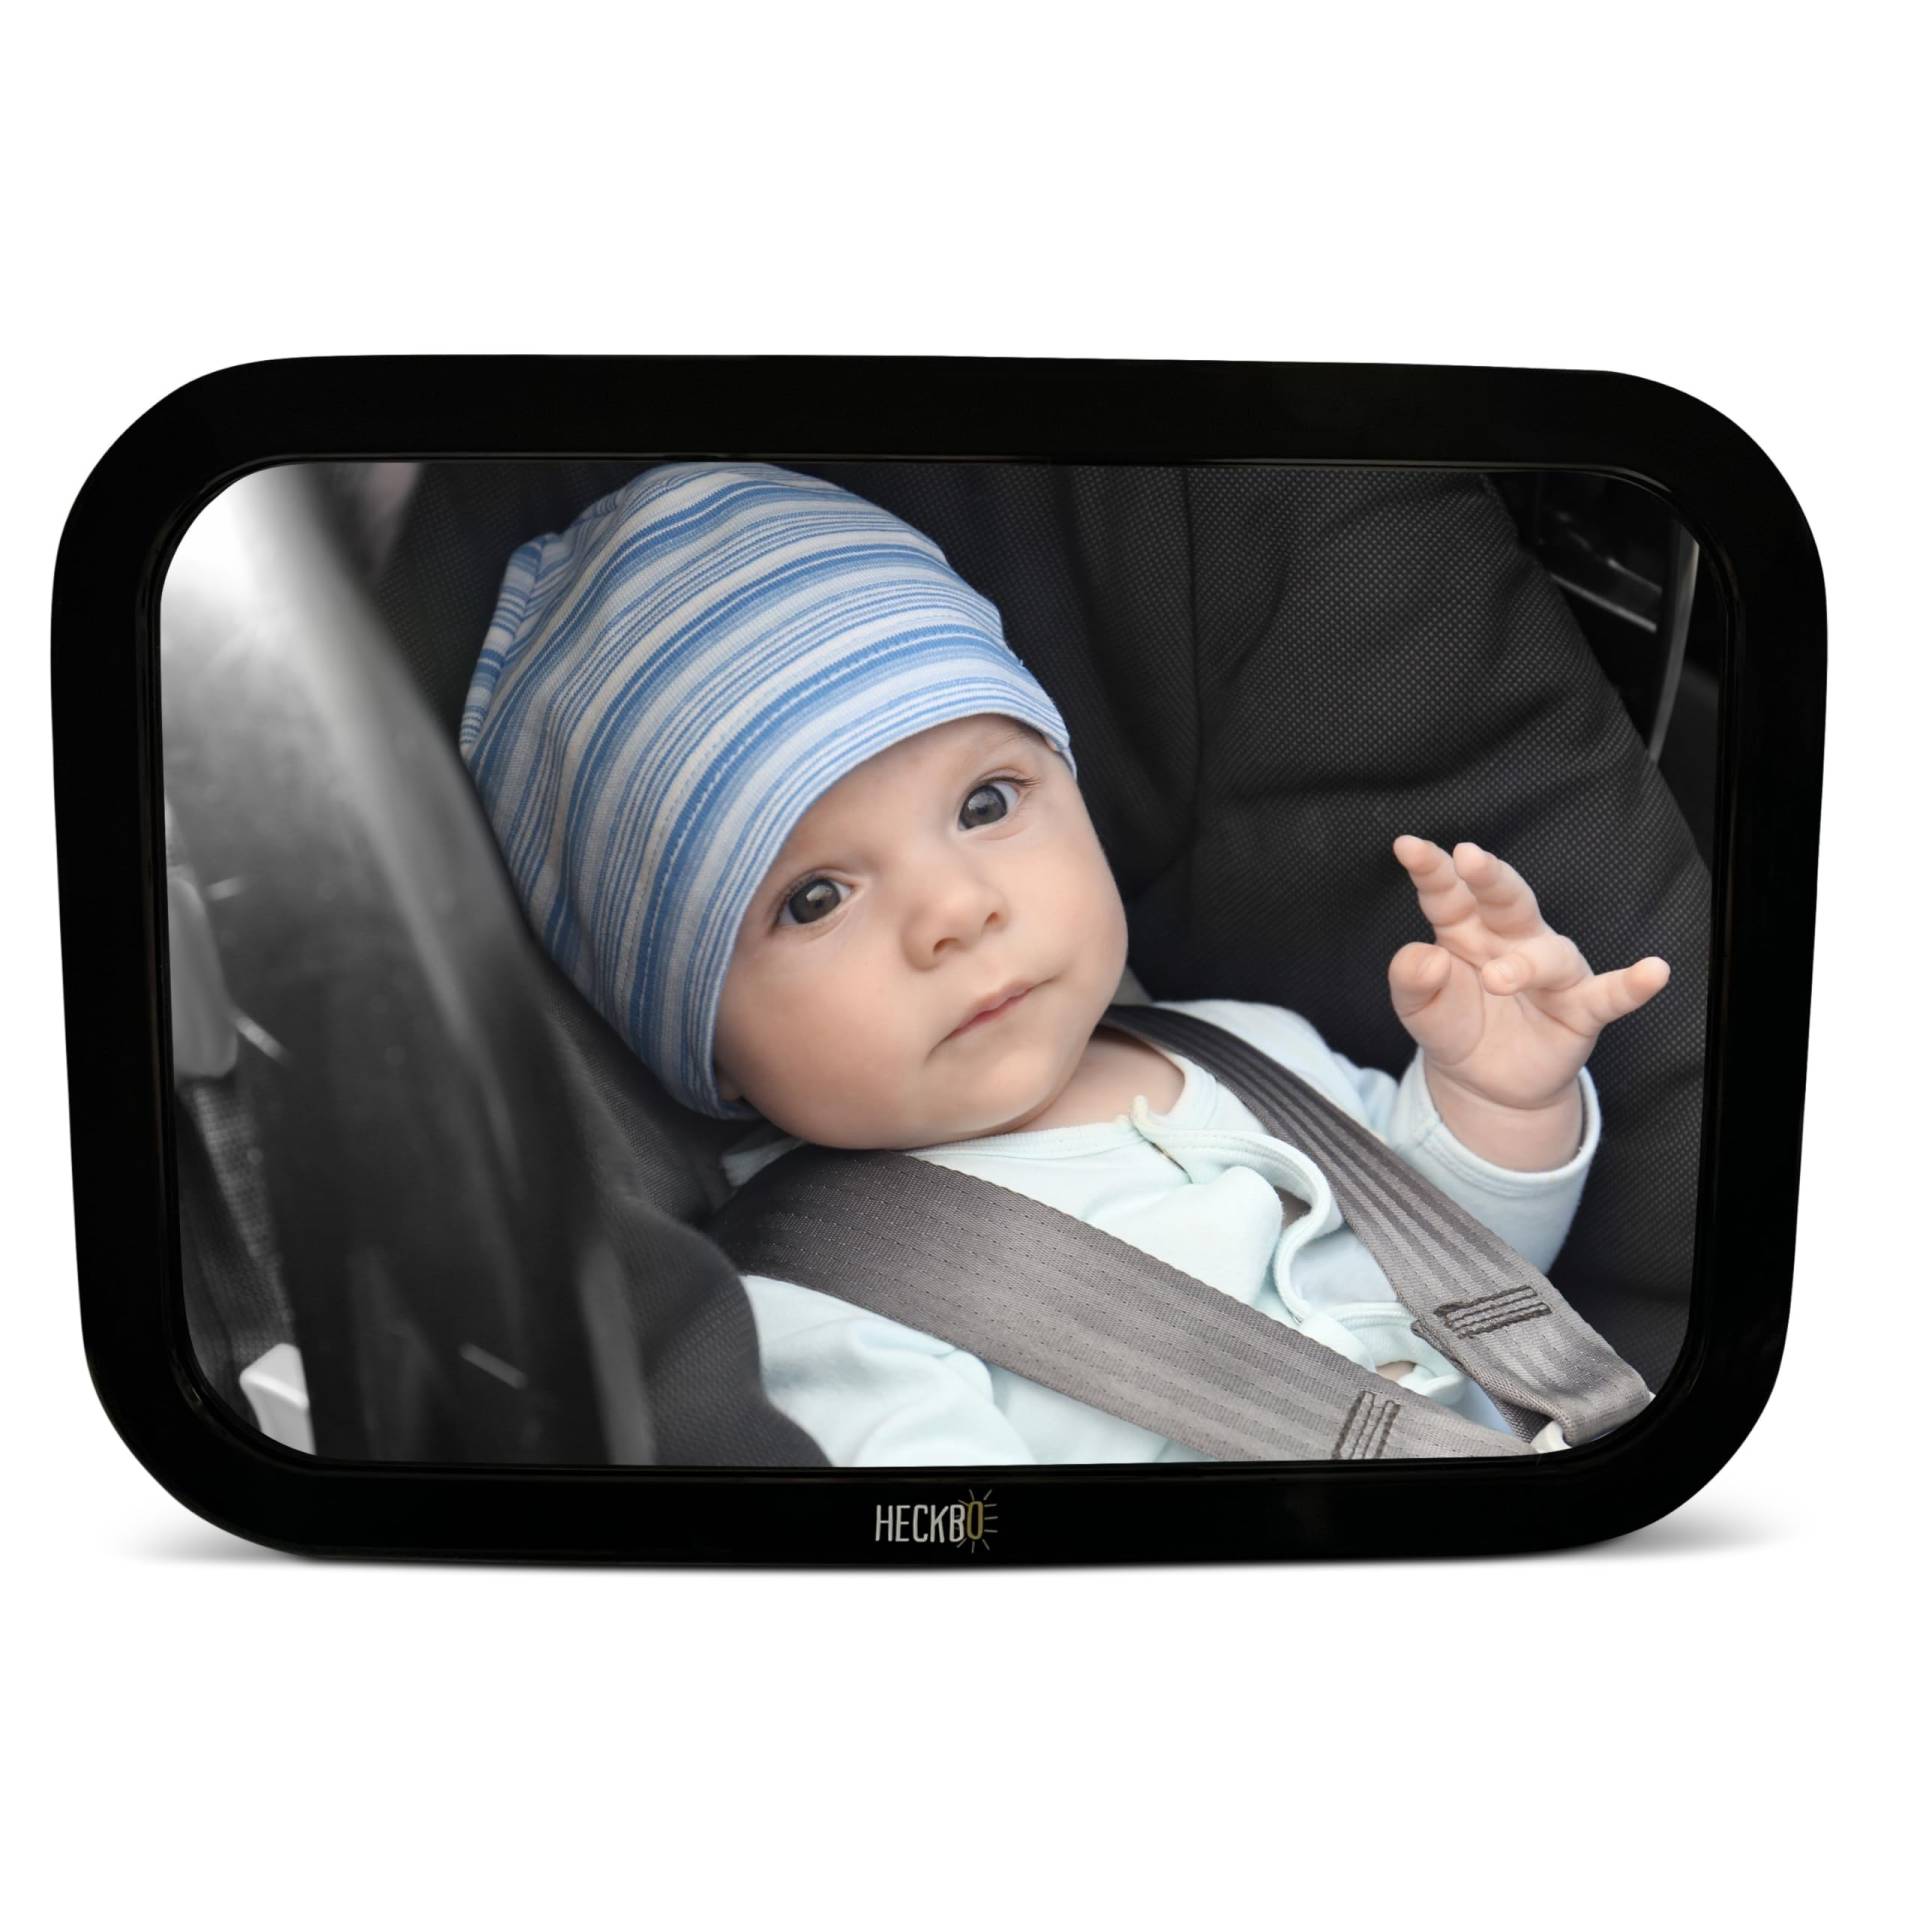 HECKBO 2X Baby Autospiegel von HECKBO